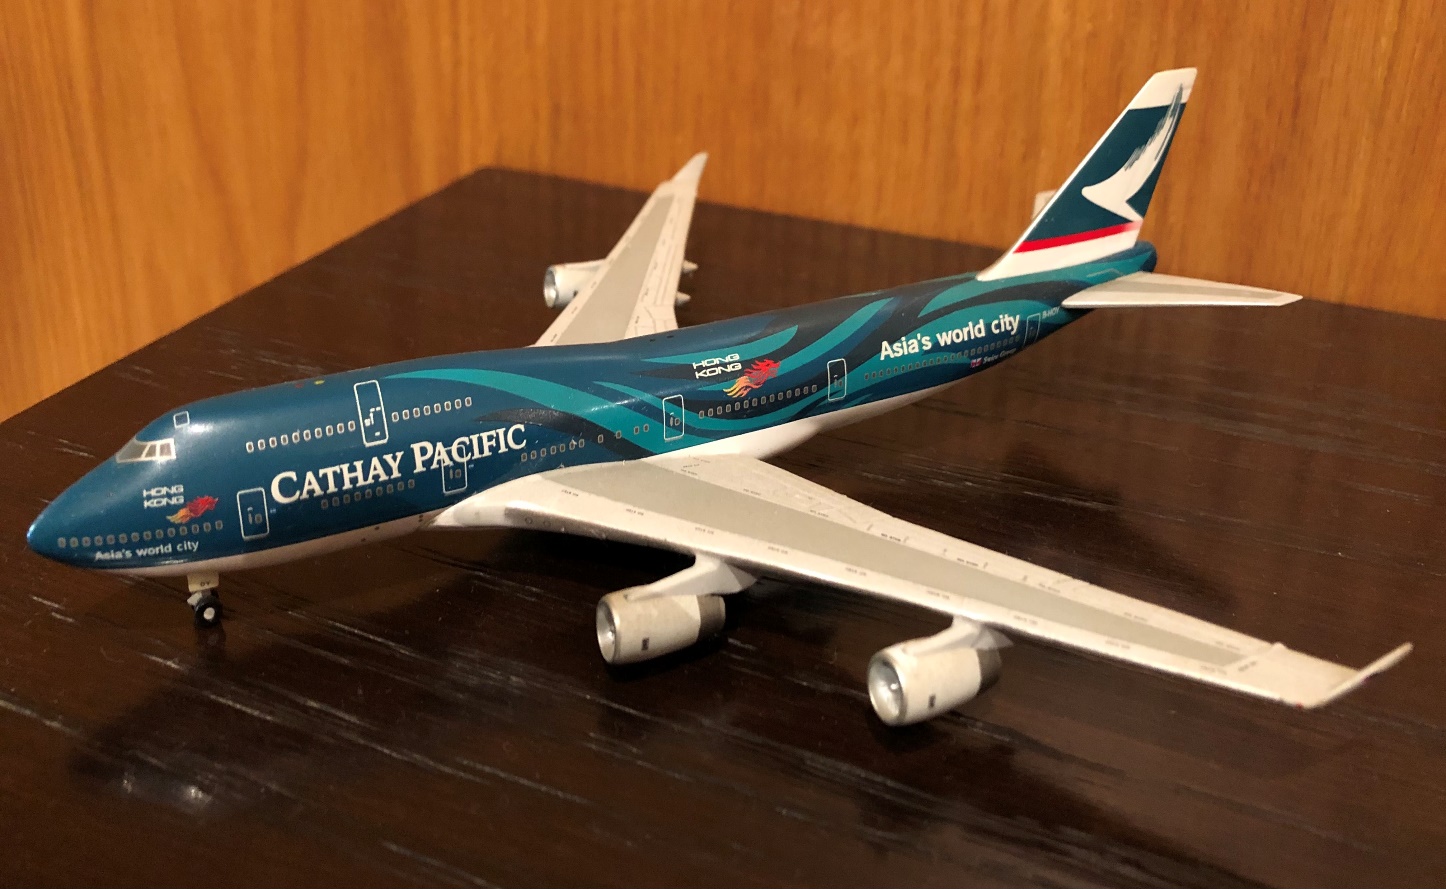 Cathay Pacific Spirit of Hong Kong B747-267B 1:200 B-HIB Die-cast Airplane Model 